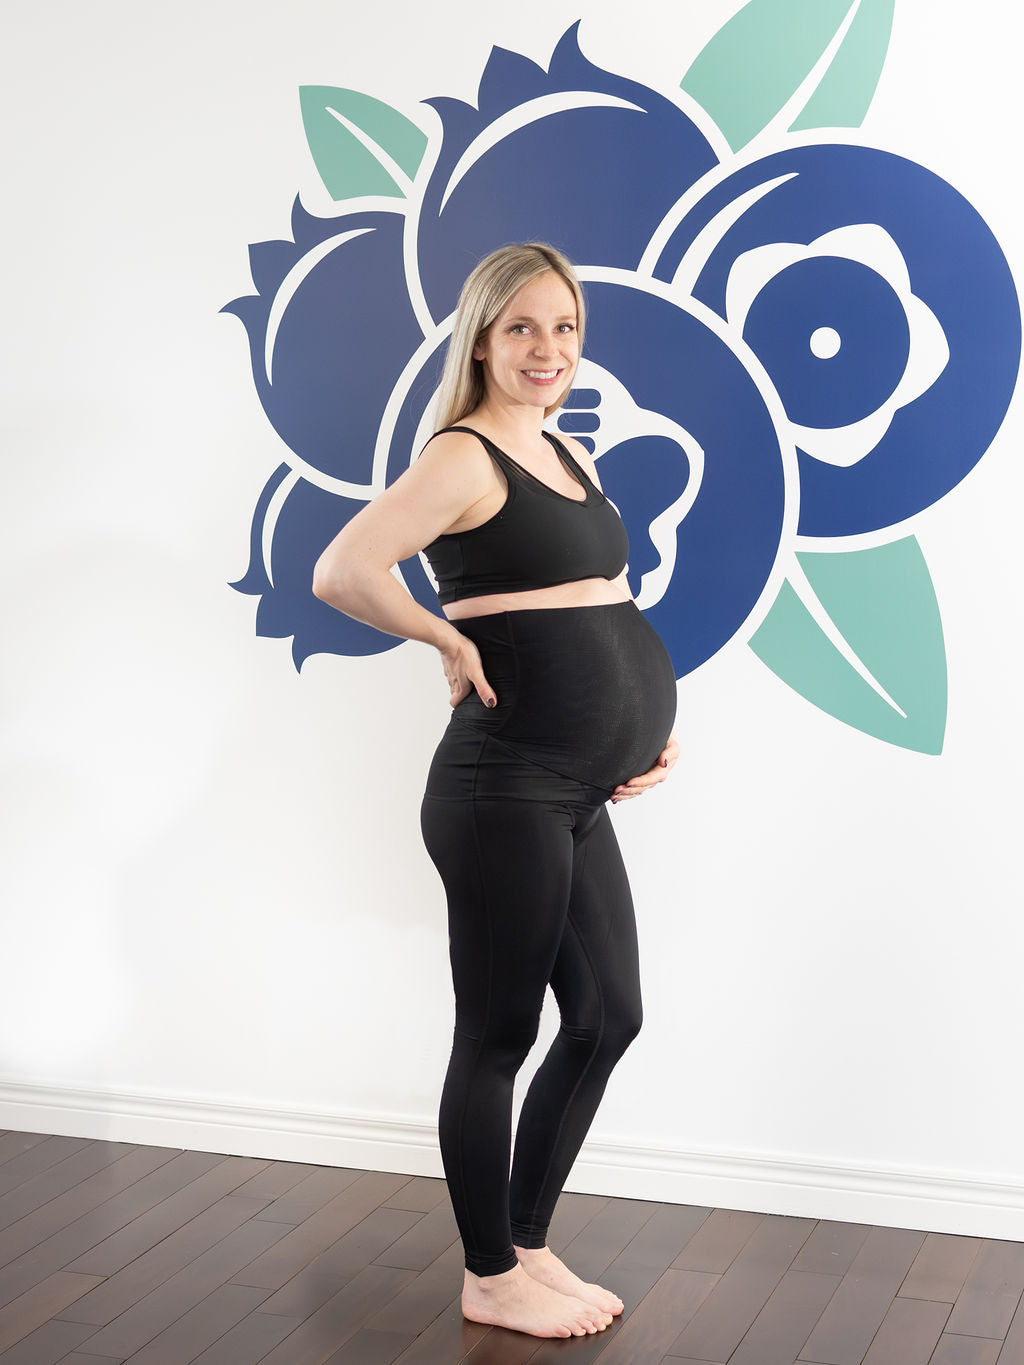 SRC: Compression Pregnancy Leggings Over The Bump Black – DeBra's